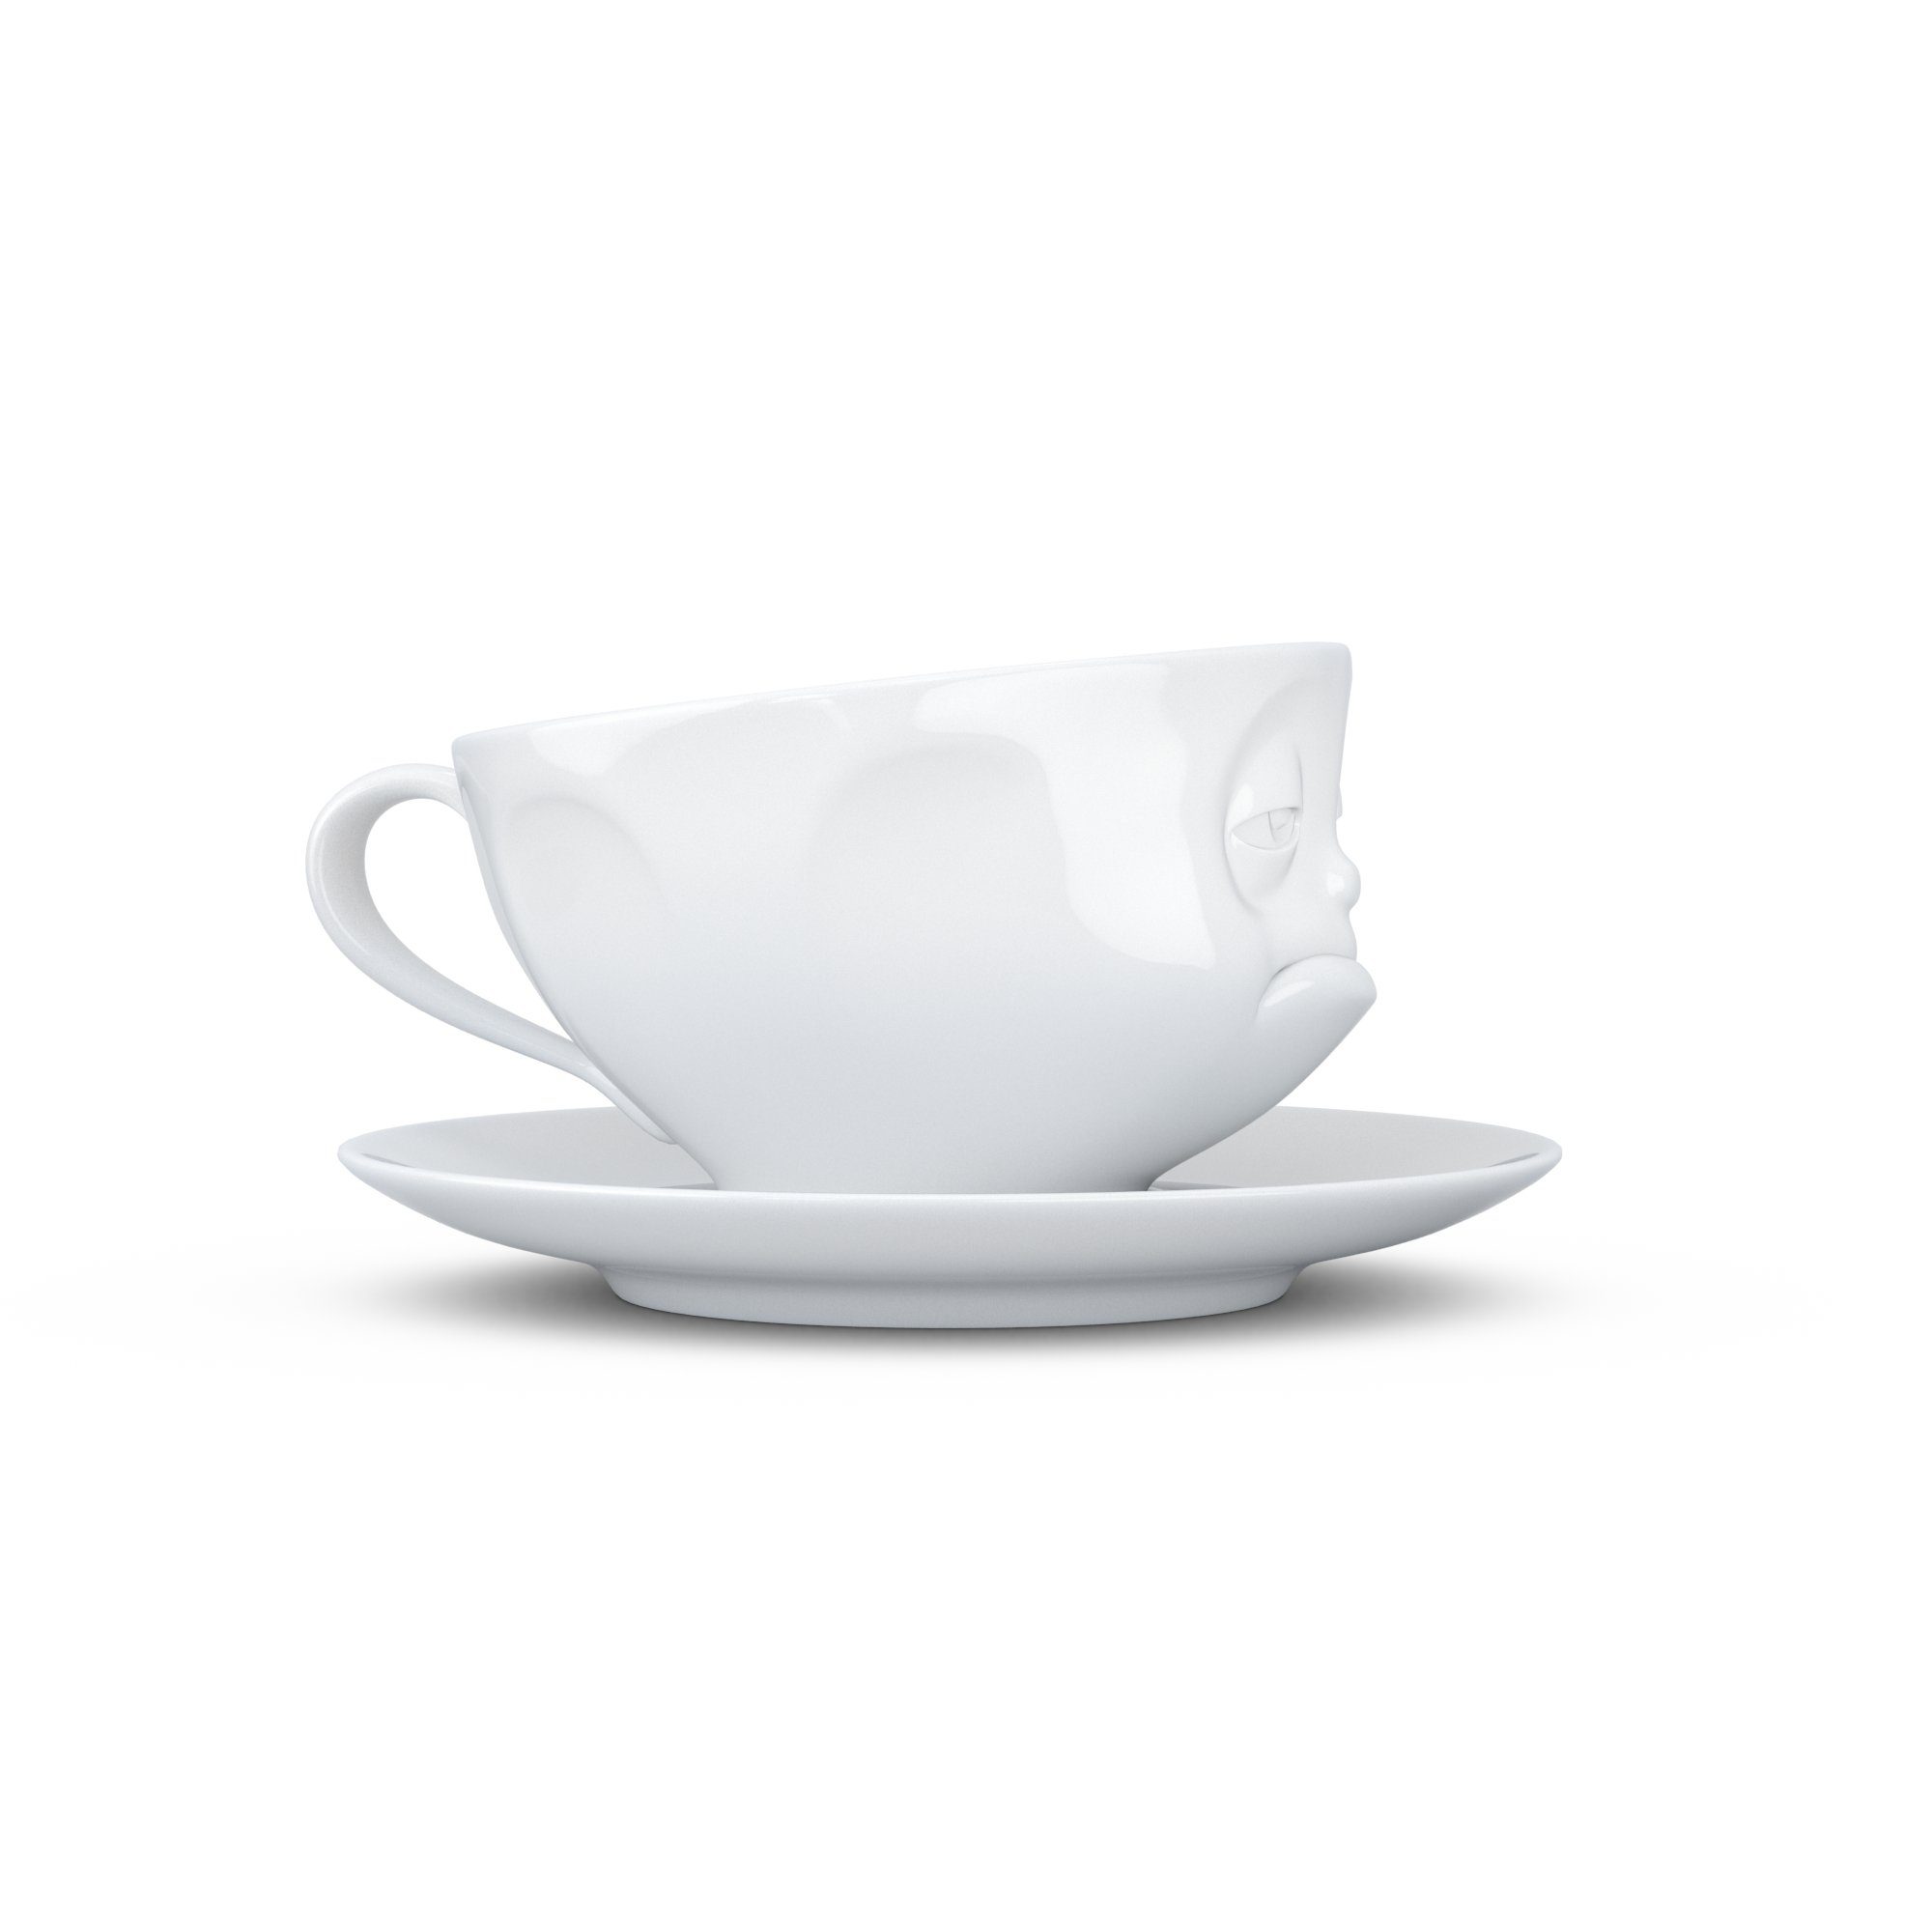 FIFTYEIGHT PRODUCTS Tasse - Tasse - Verpennt weiß Weiß Kaffeetasse 200 ml